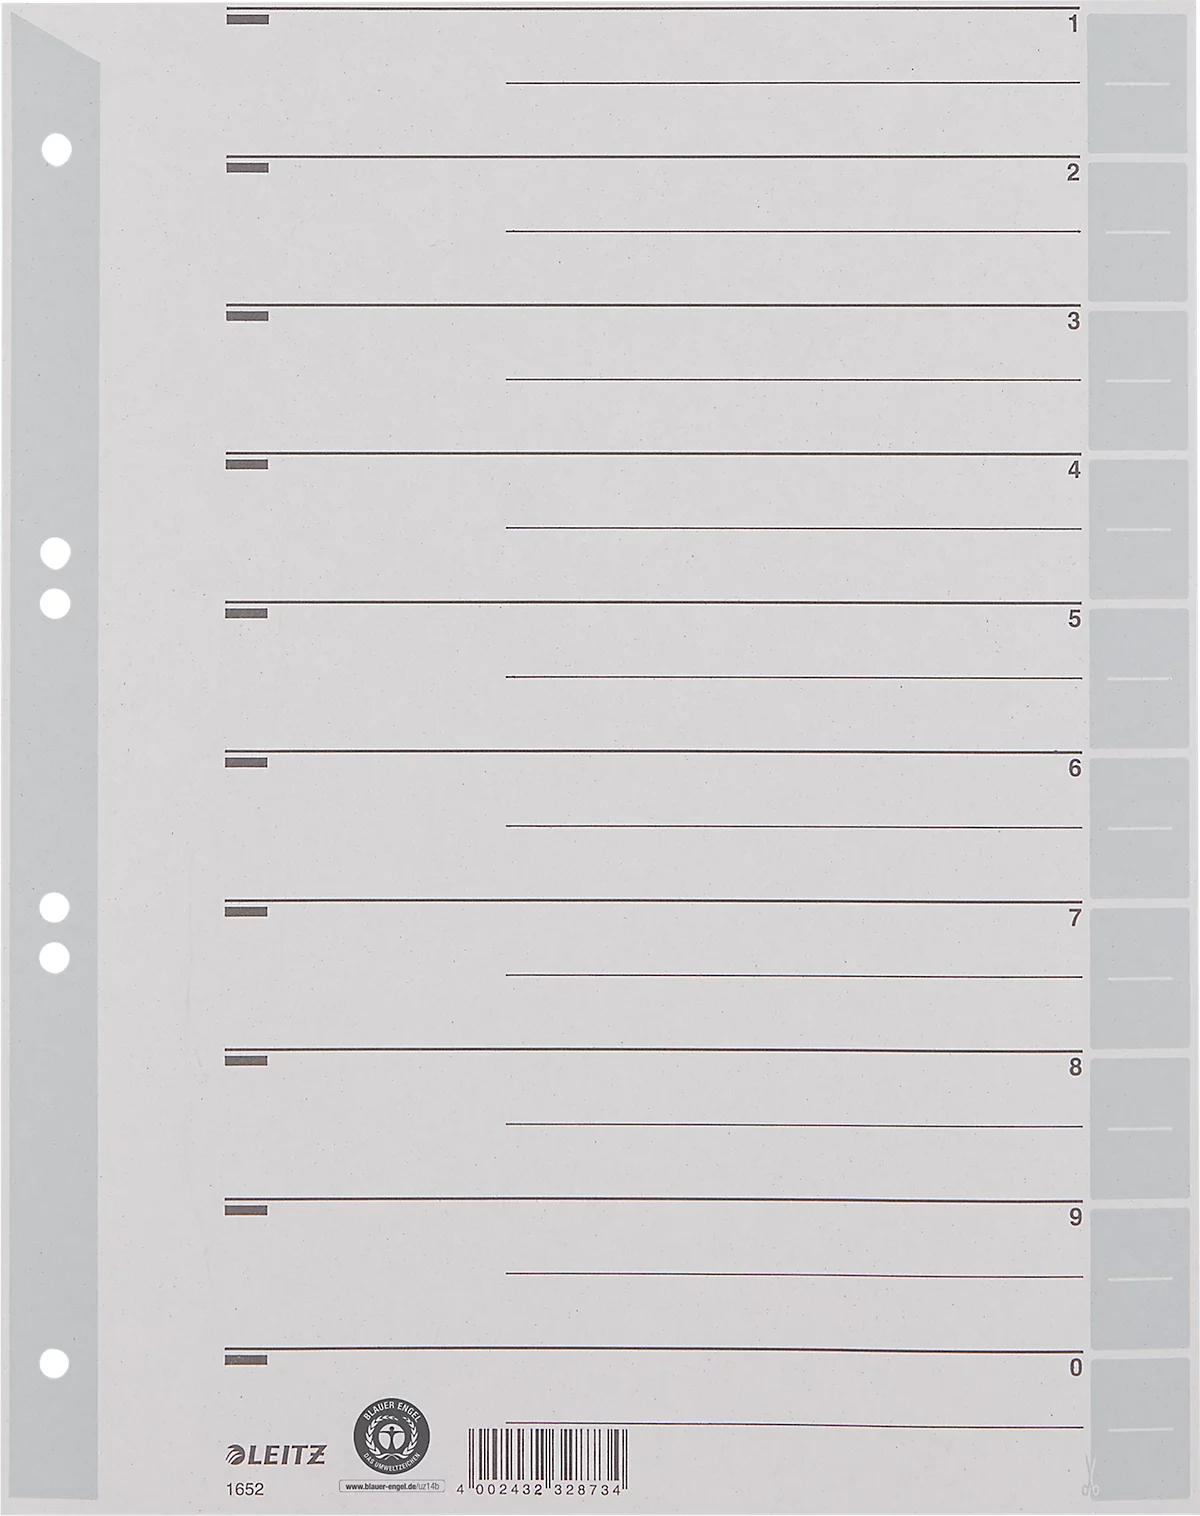 LEITZ® Trennblätter A4 1652, zur freien Verwendung, 100 Stück, grau